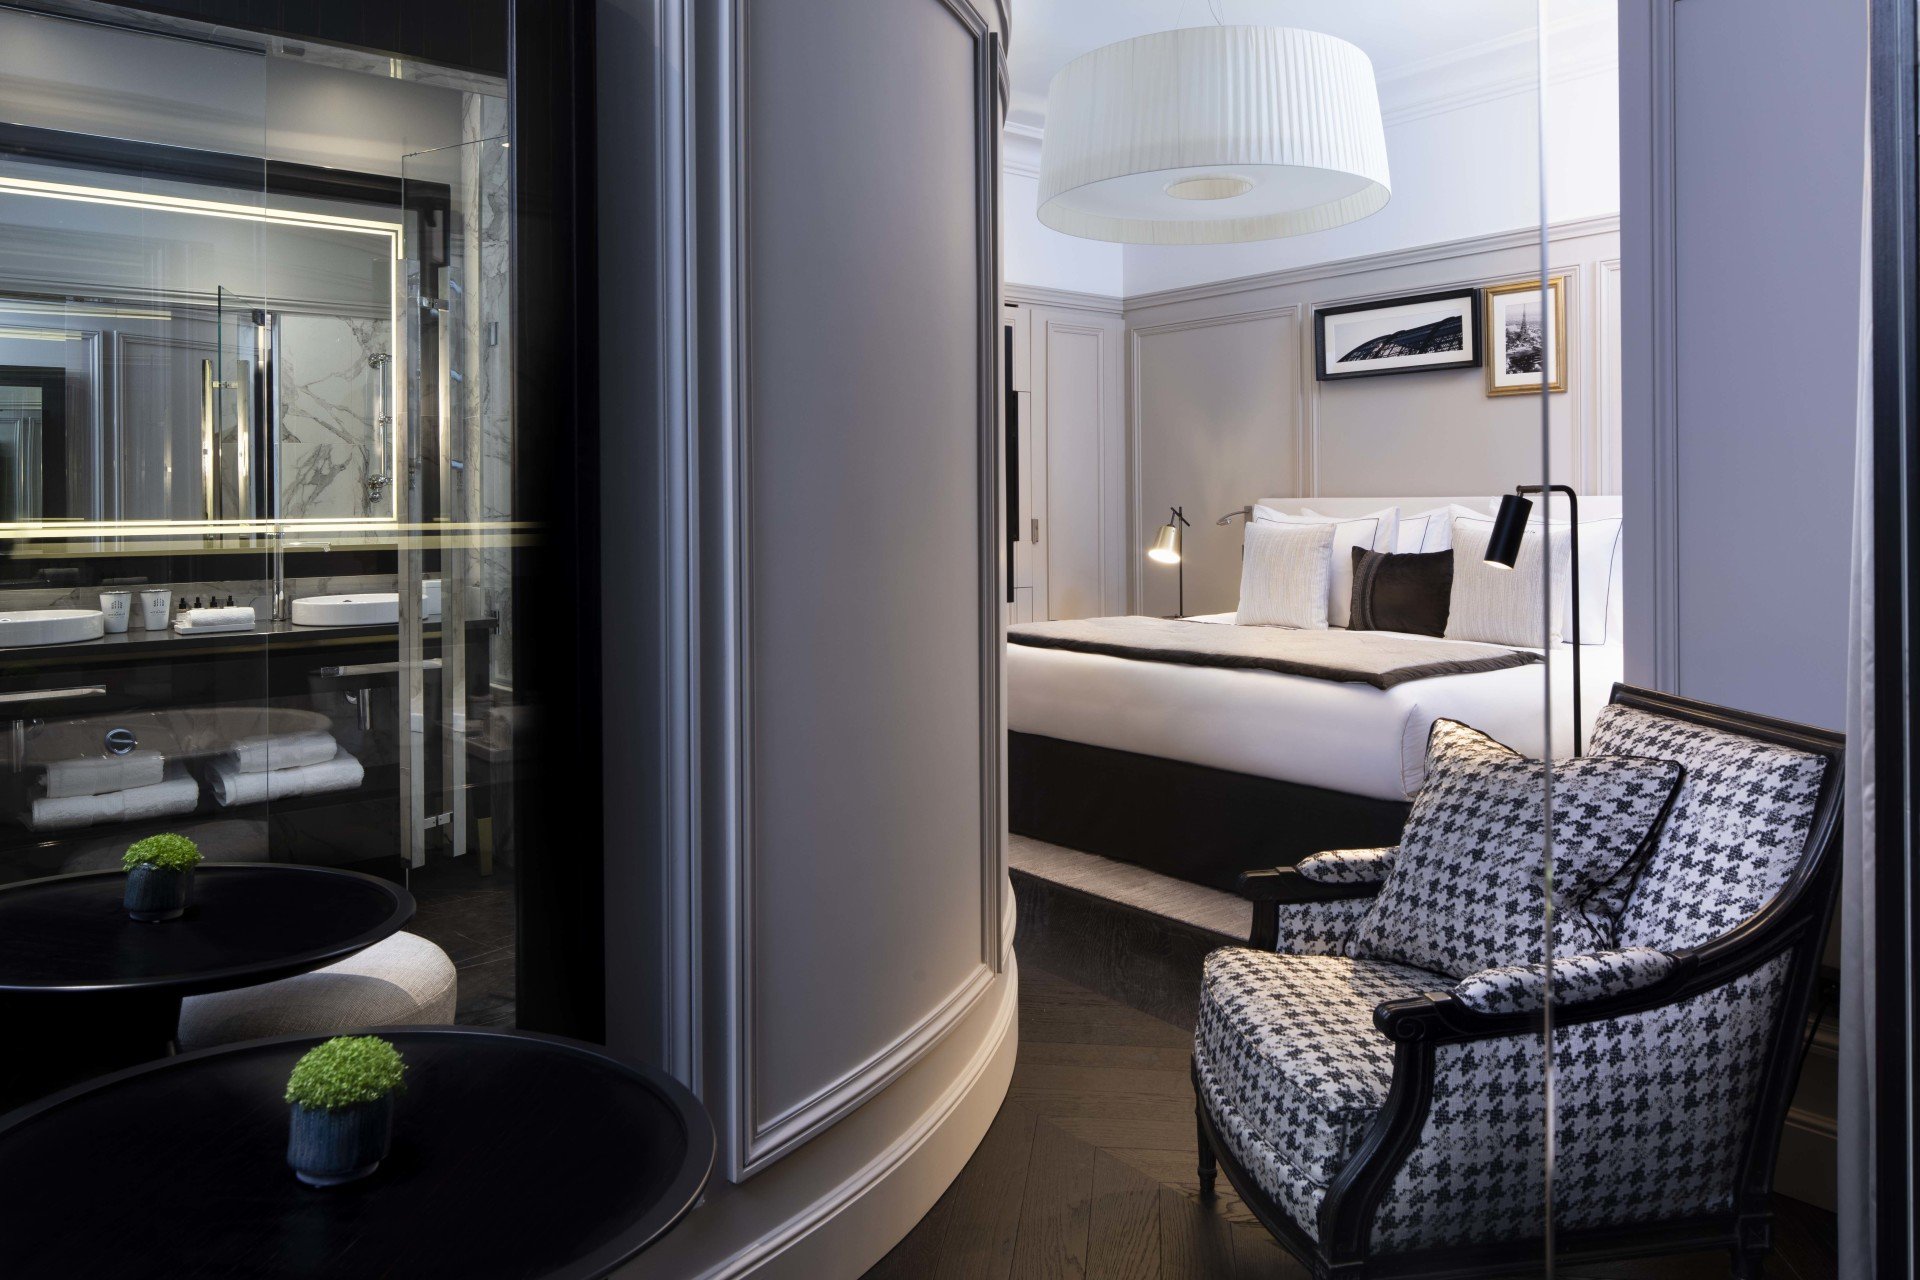 Hotel et Spa Le Damantin Paris - hôtel de luxe designé par le studio d'architecture d'intérieur jean-philippe nuel - chambre design équipée avec lit, fauteuil design, salle de bain moderne